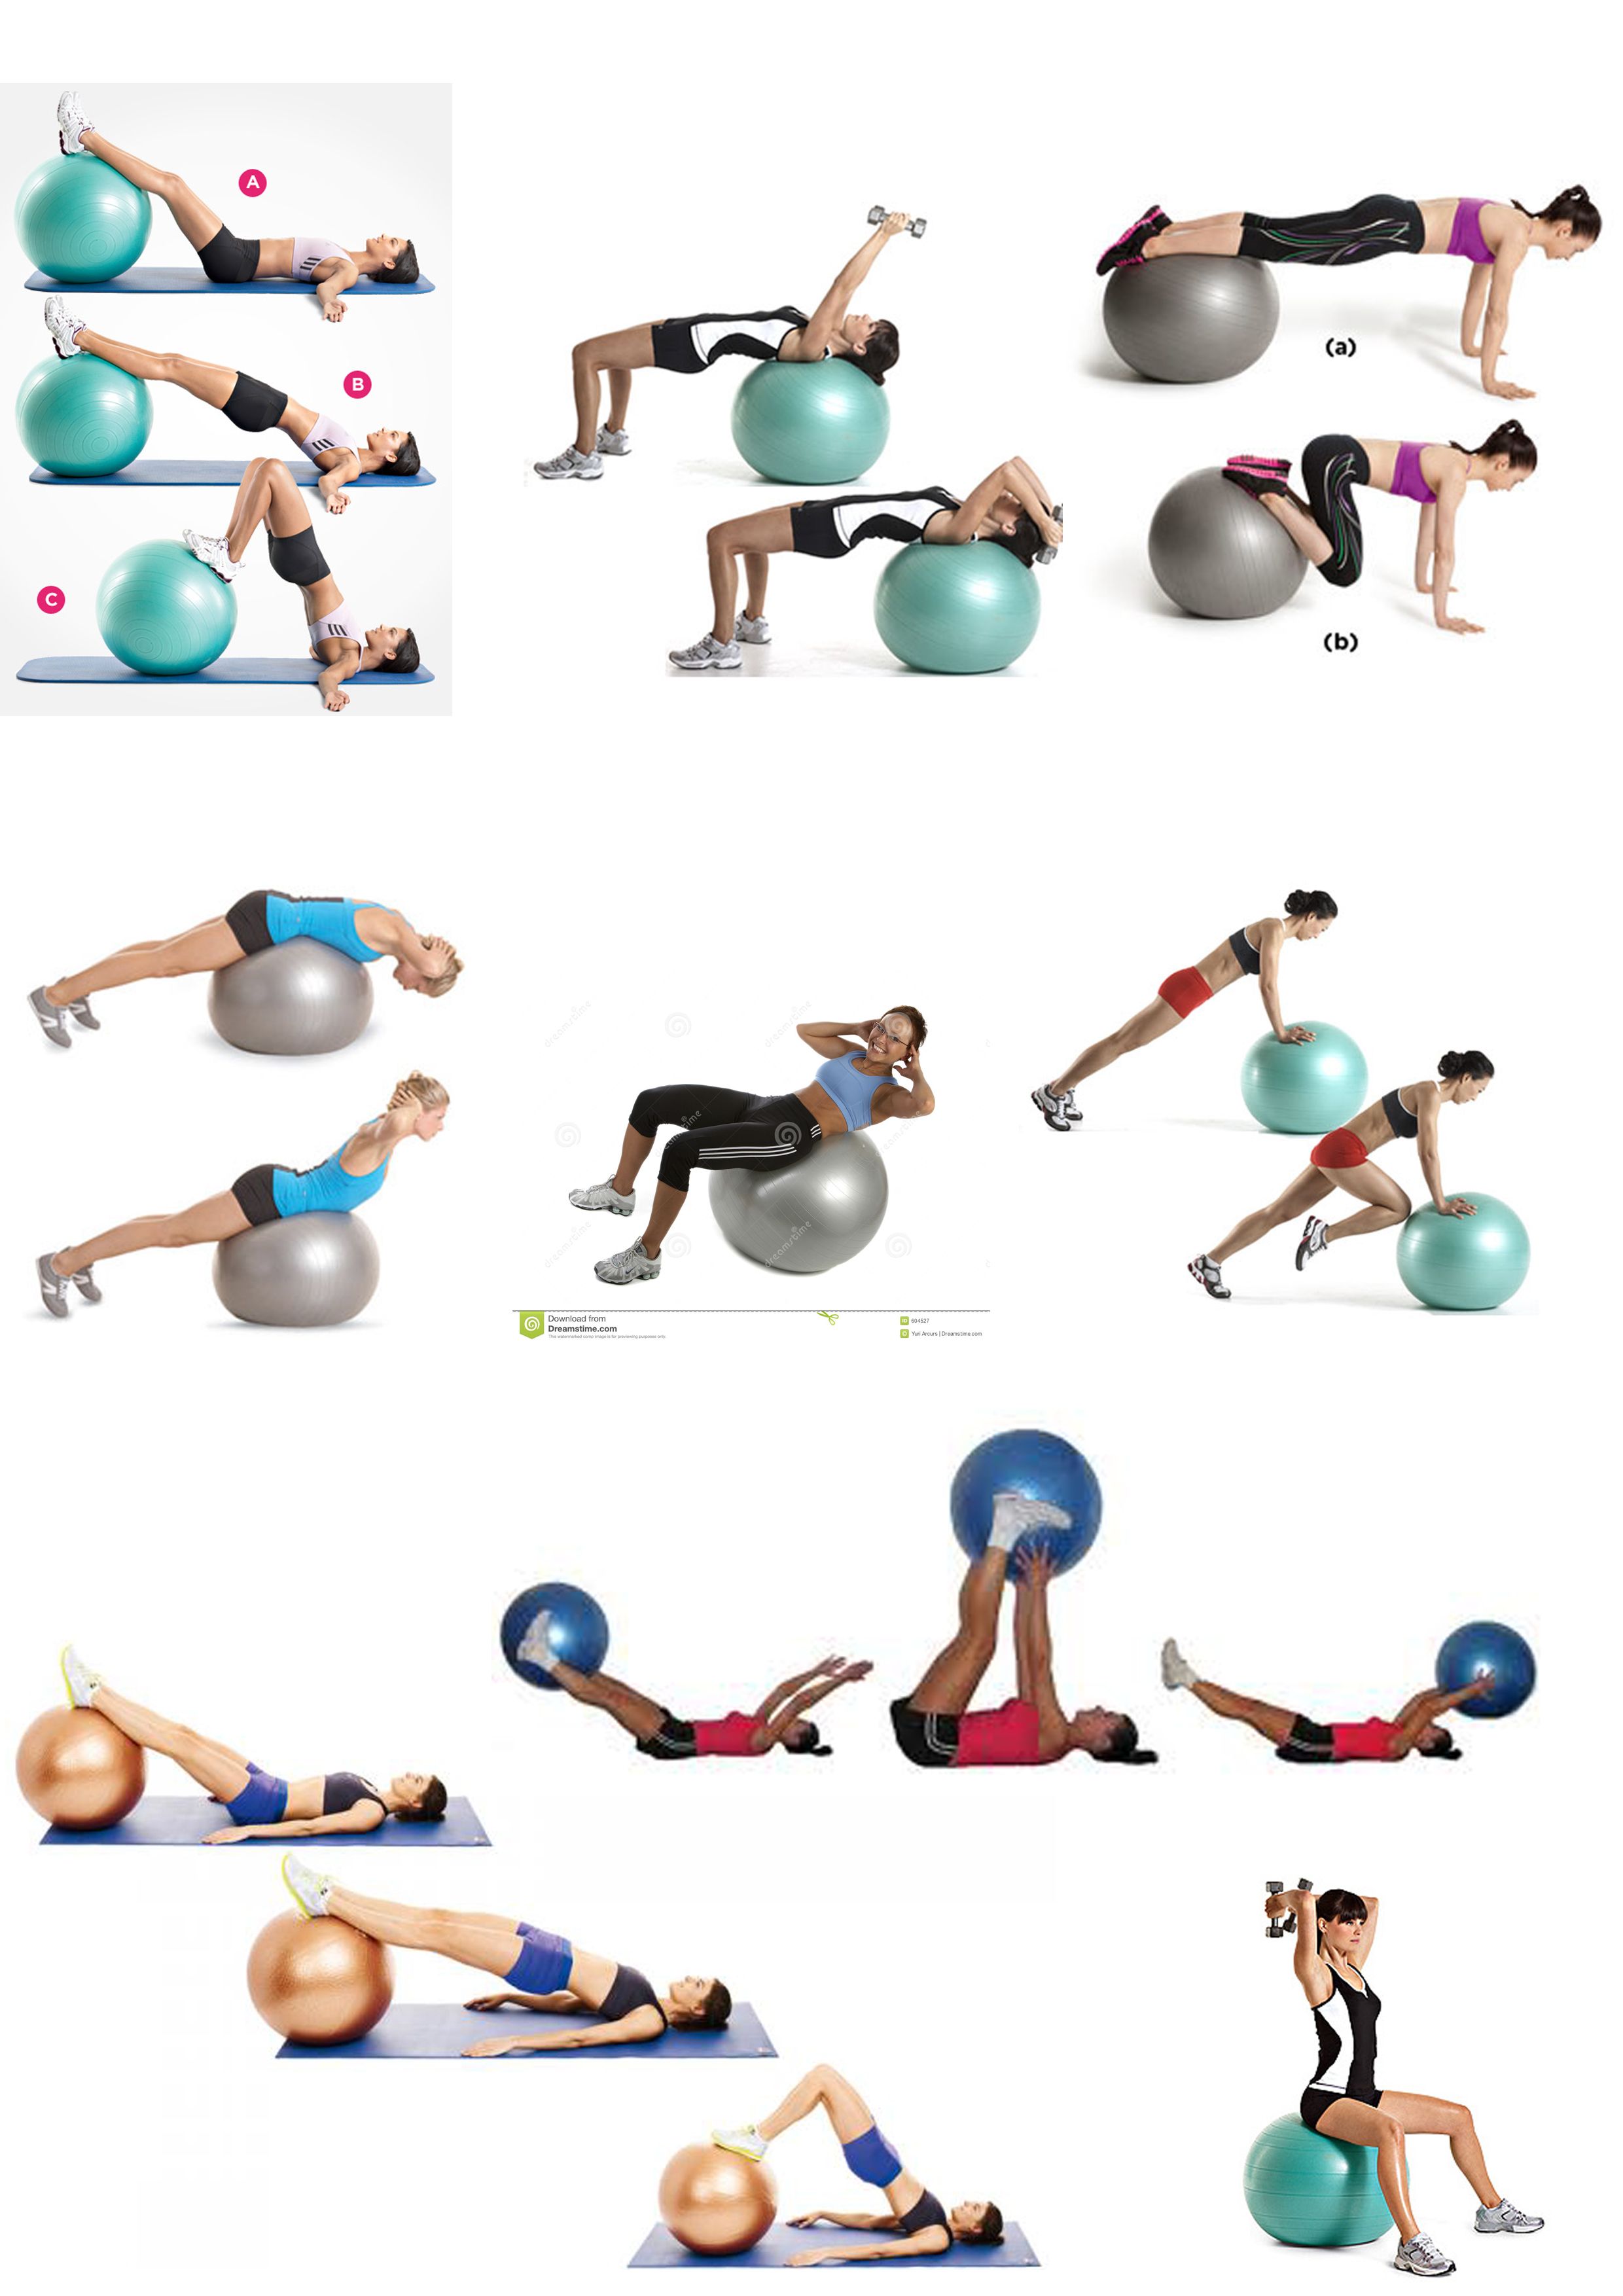 Эффективные упражнения с фитболом (гимнастическим мячом) для красоты и здоровья | rulebody.ru — правила тела